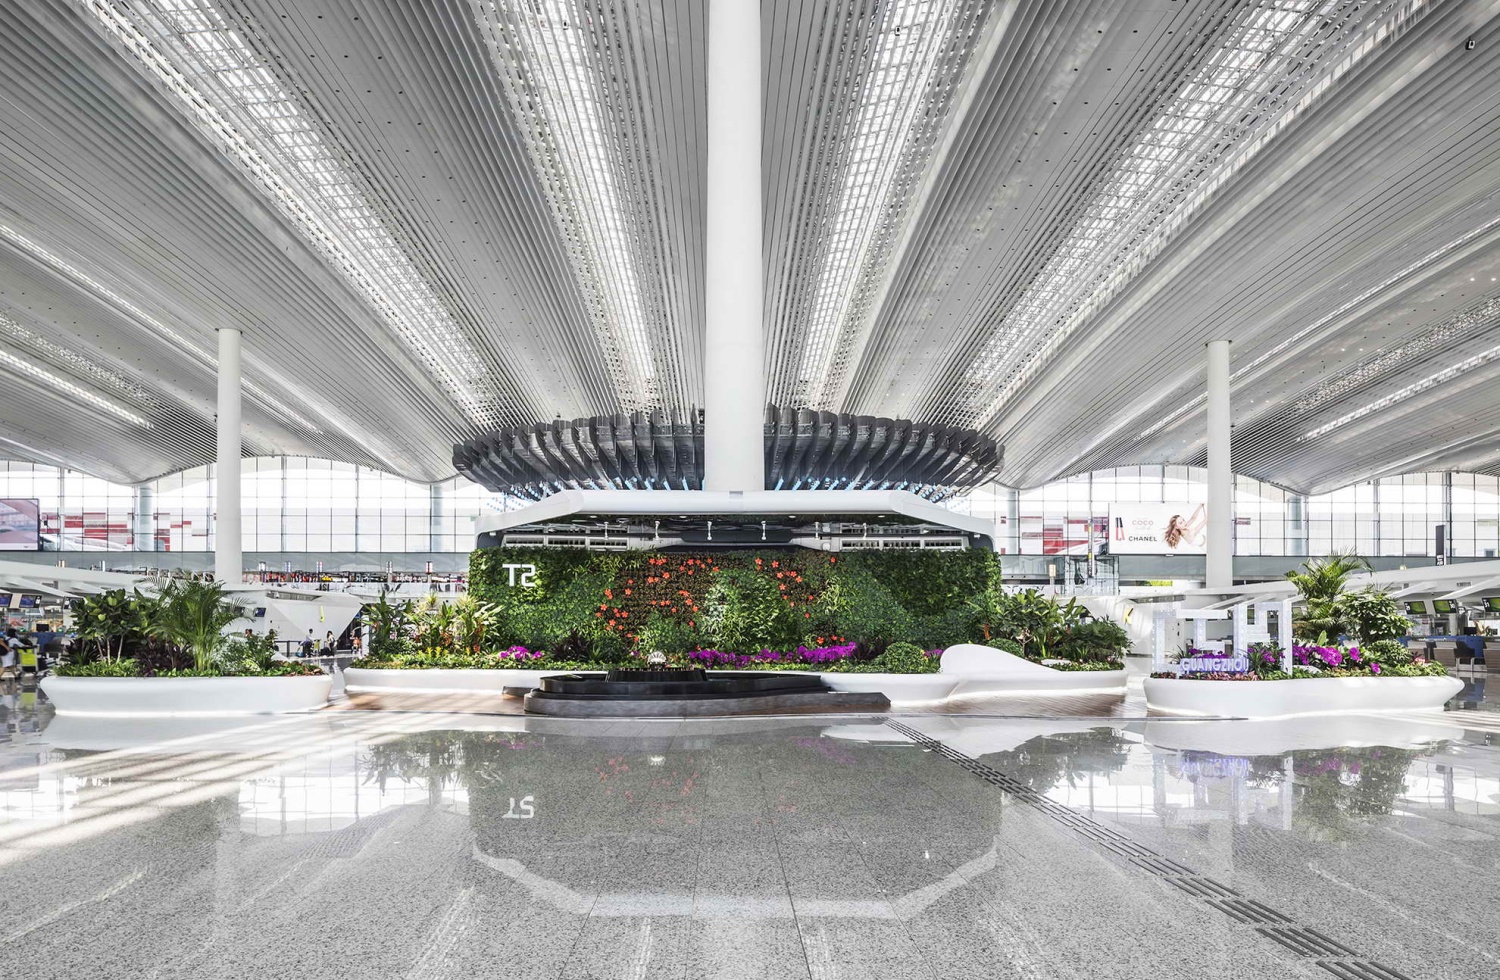 图片 首都机场今日迎来“元旦”节前客流高峰 预计进出港旅客近8万人次_民航资源网